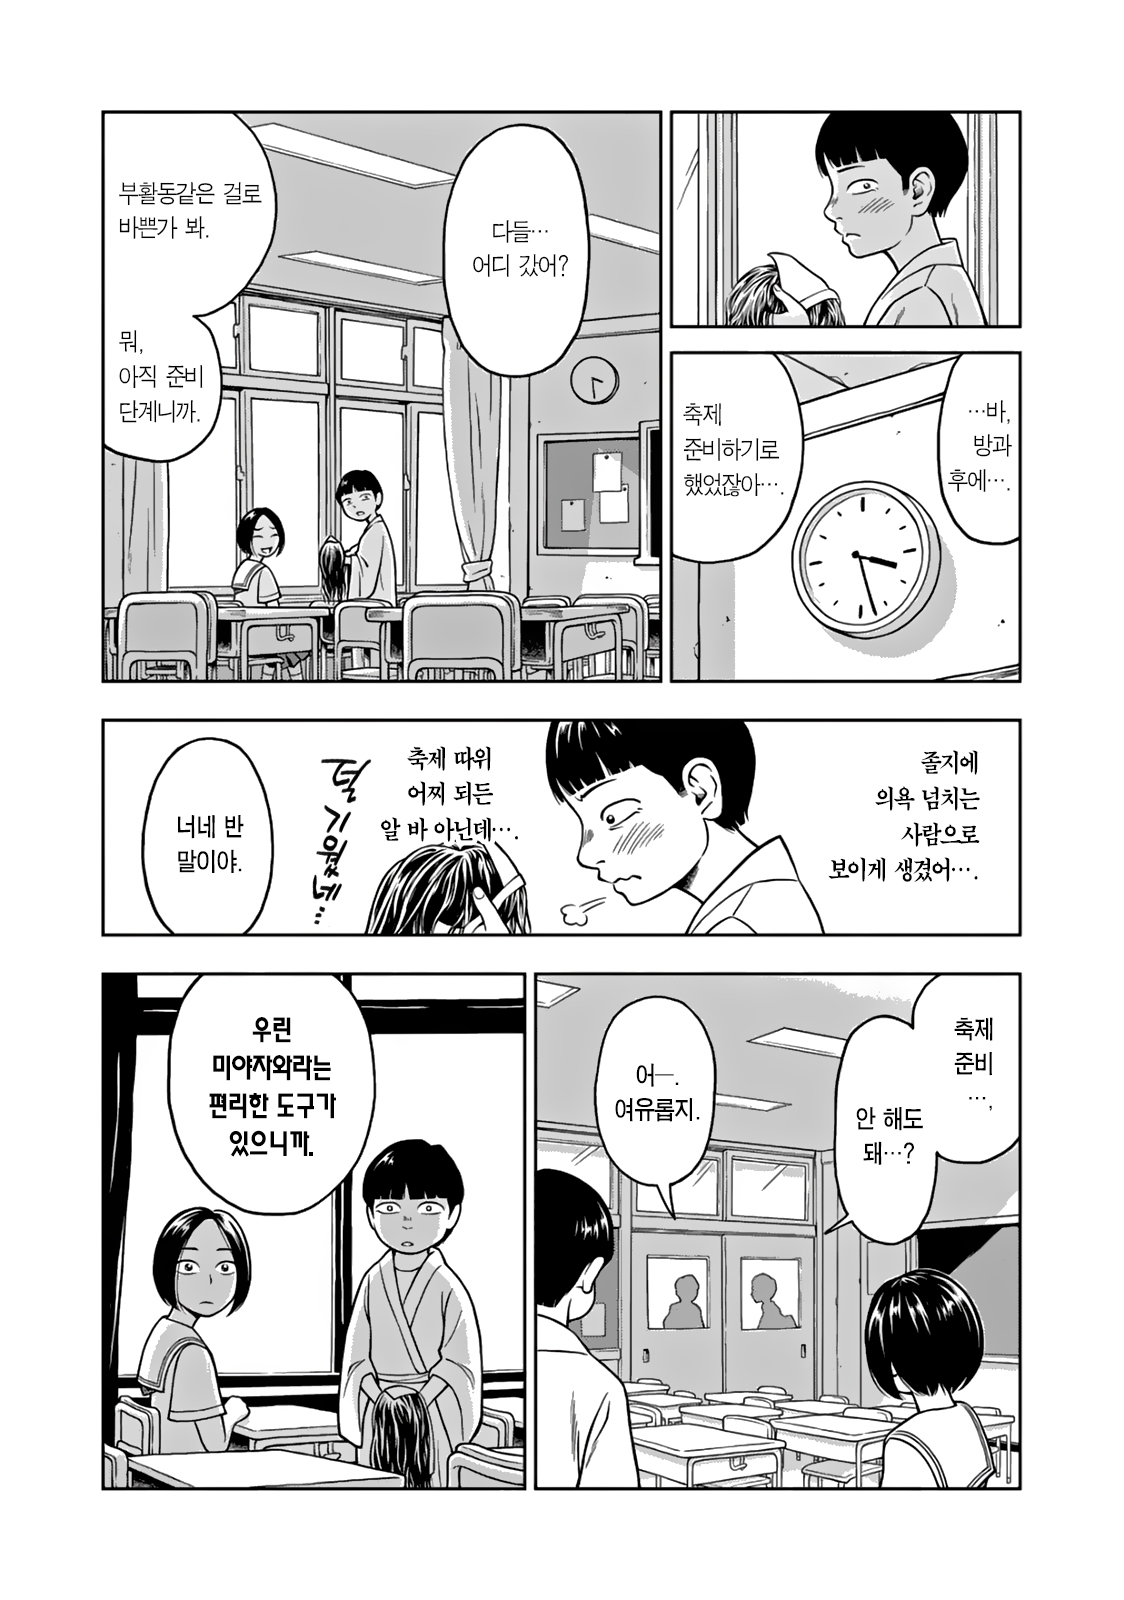 (스압) 찐따가 인싸녀 별명 지어주는 만화.manhwa